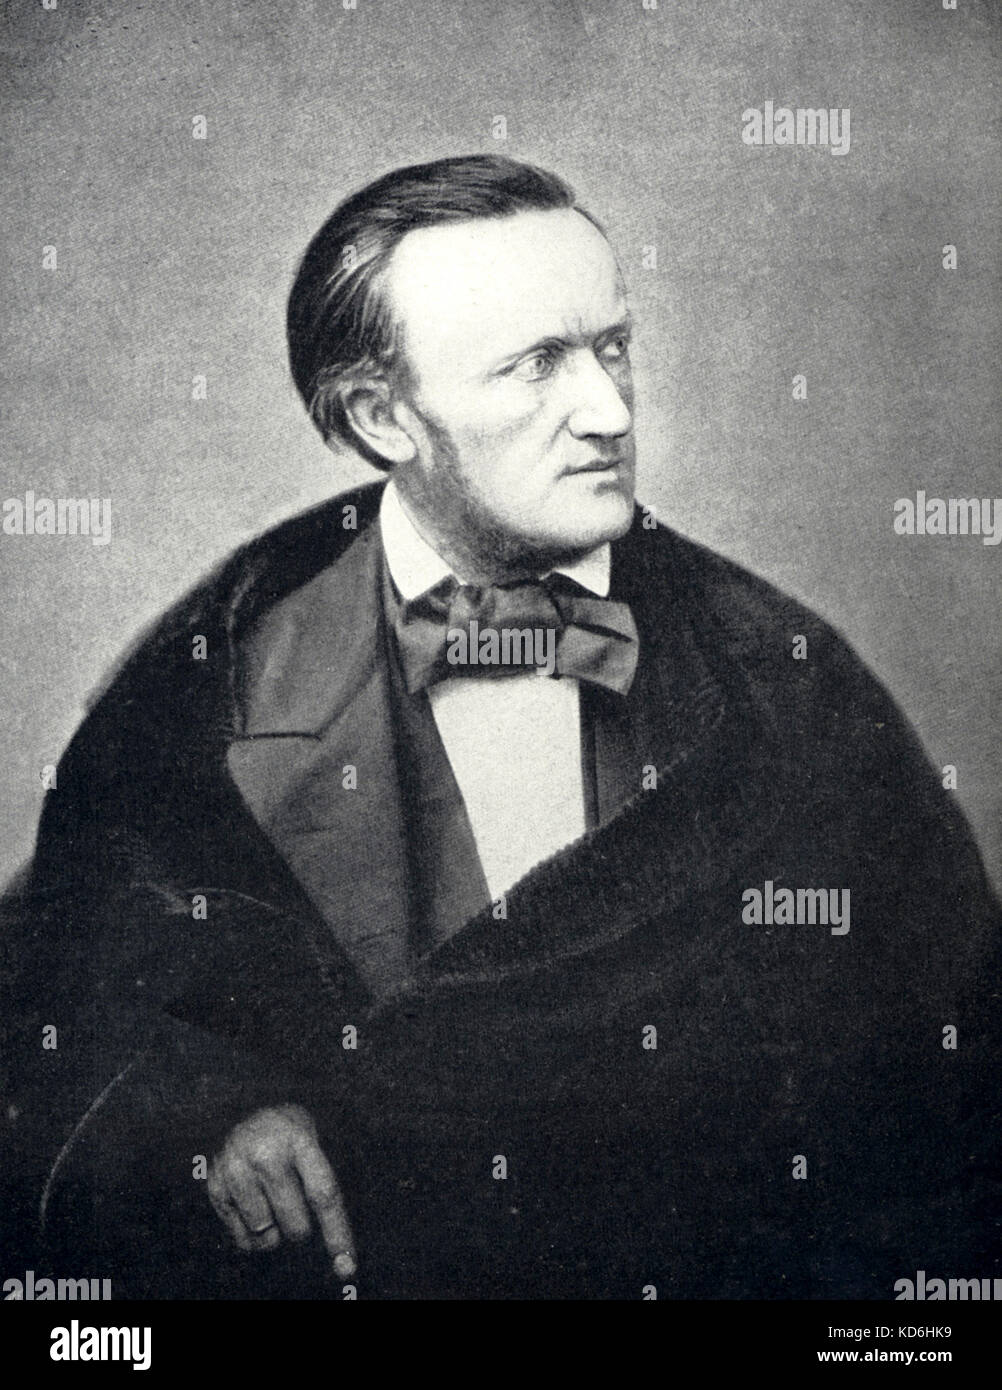 Richard Wagner, nach 1860 Foto. Deutsche Komponist und Autor, 1813-1883. Stockfoto